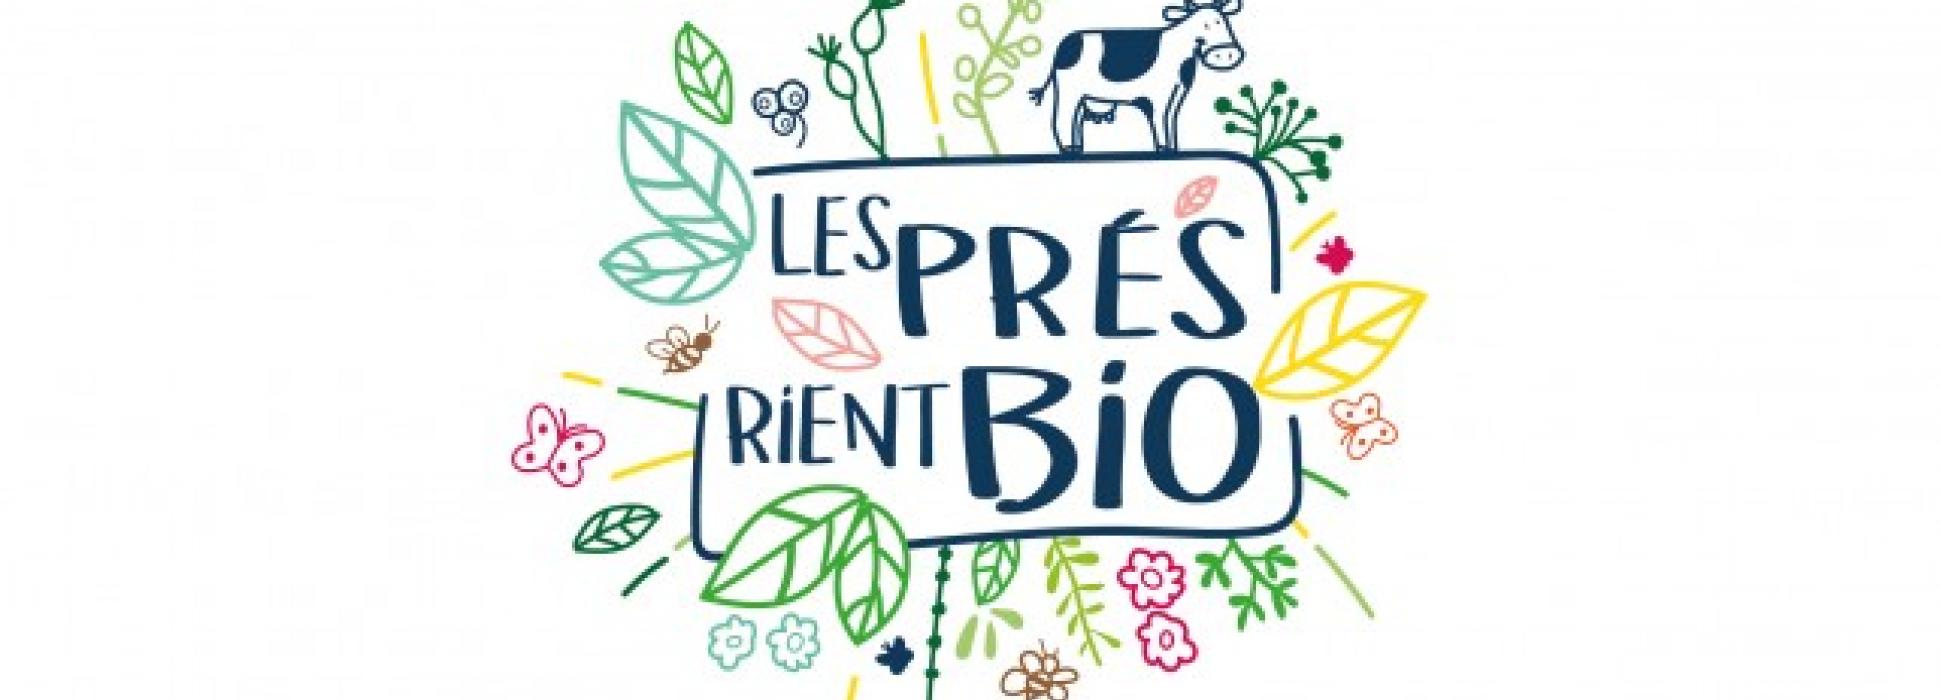 Les Prés rient Bio arrive à la 1ère place des entreprises du secteur alimentaire français certifiées B Corp®